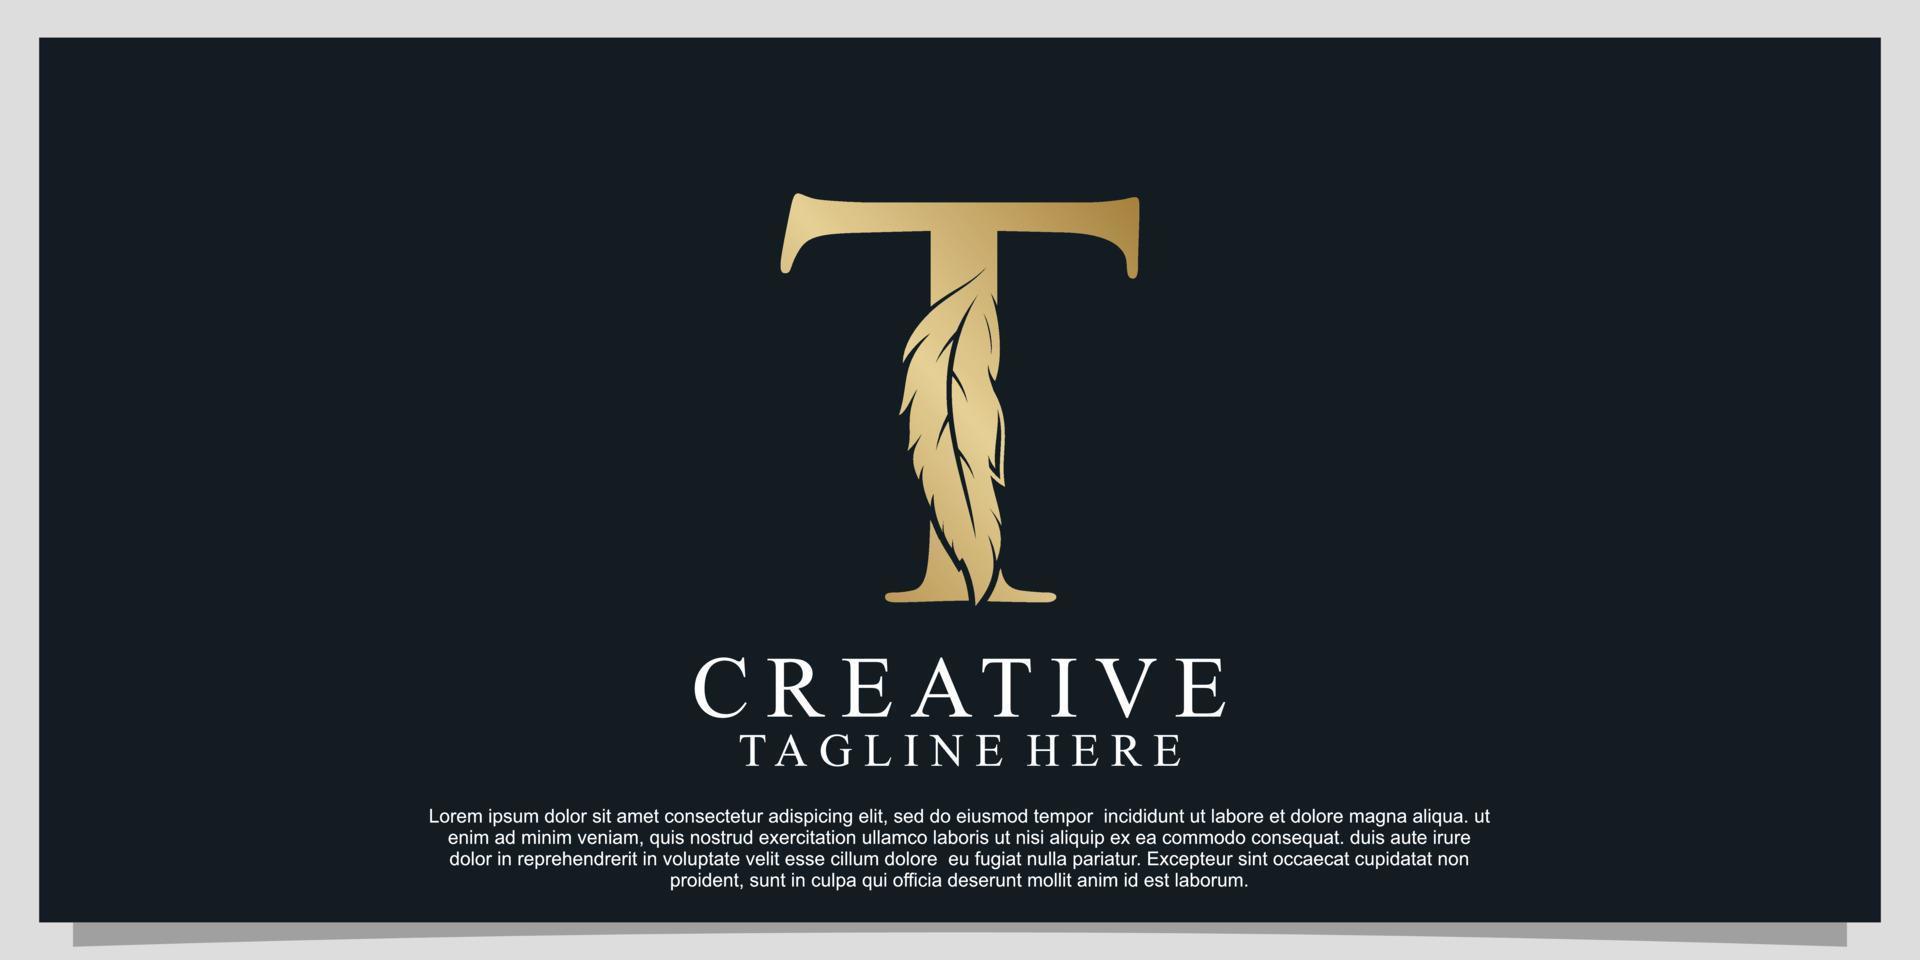 Golden letter T with unique feather combination logo design Premium Vector